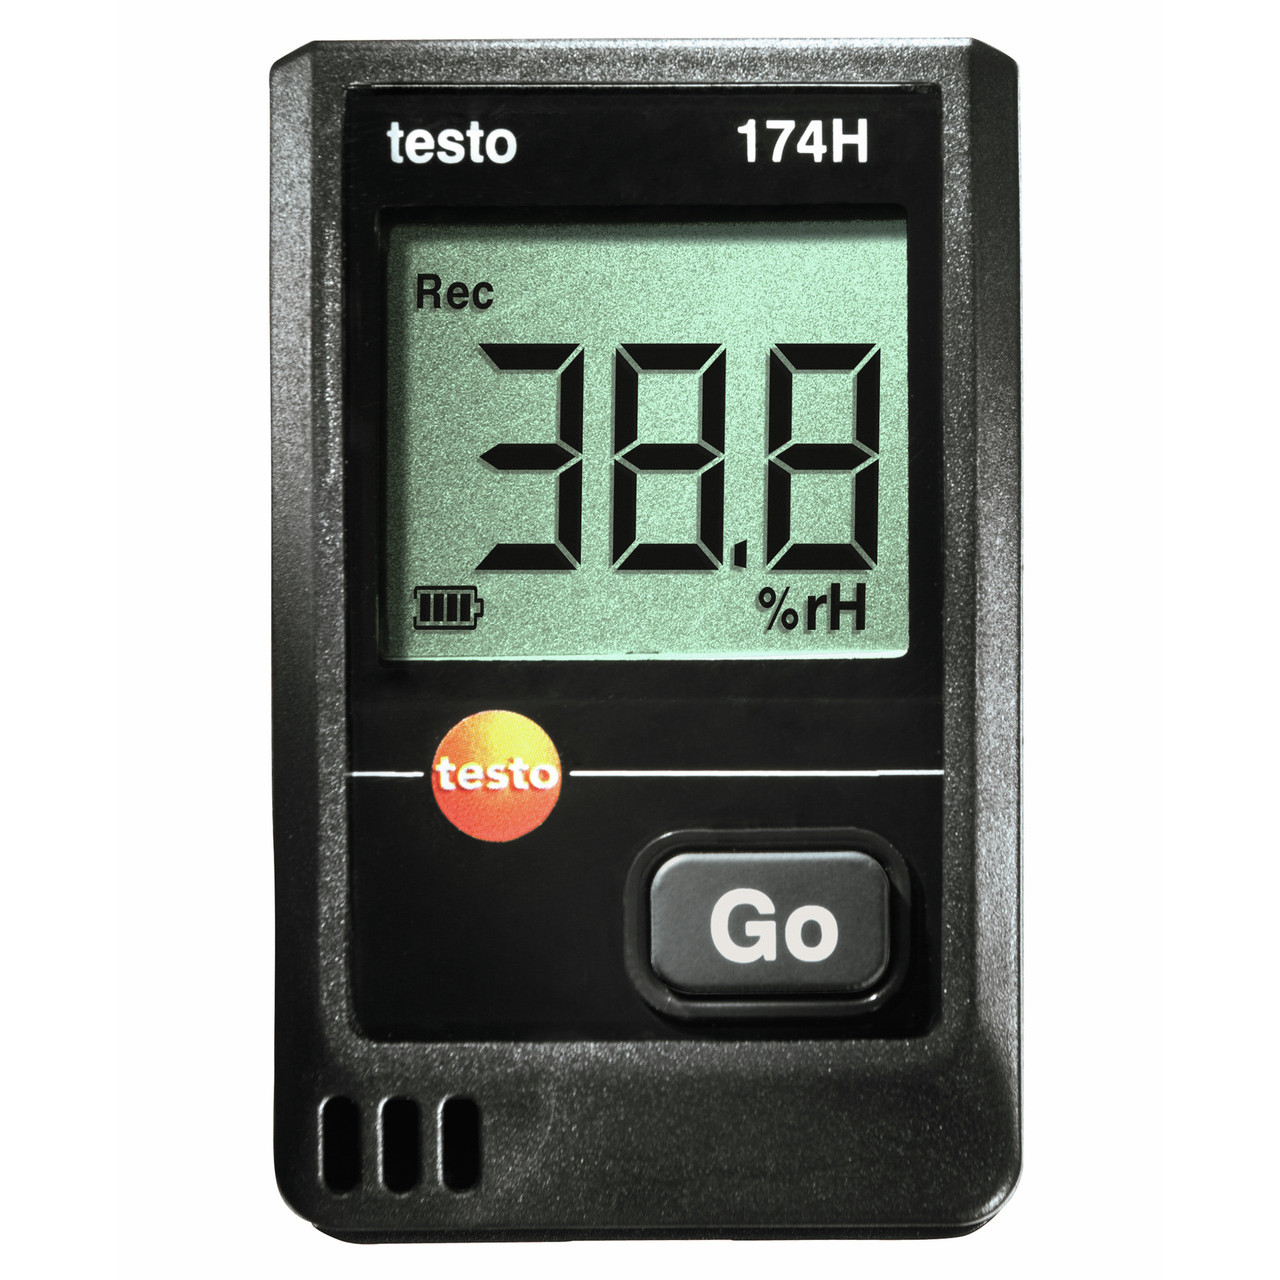 testo 105, Einhand-Temperatur-Messgerät + mehr günstig kaufen